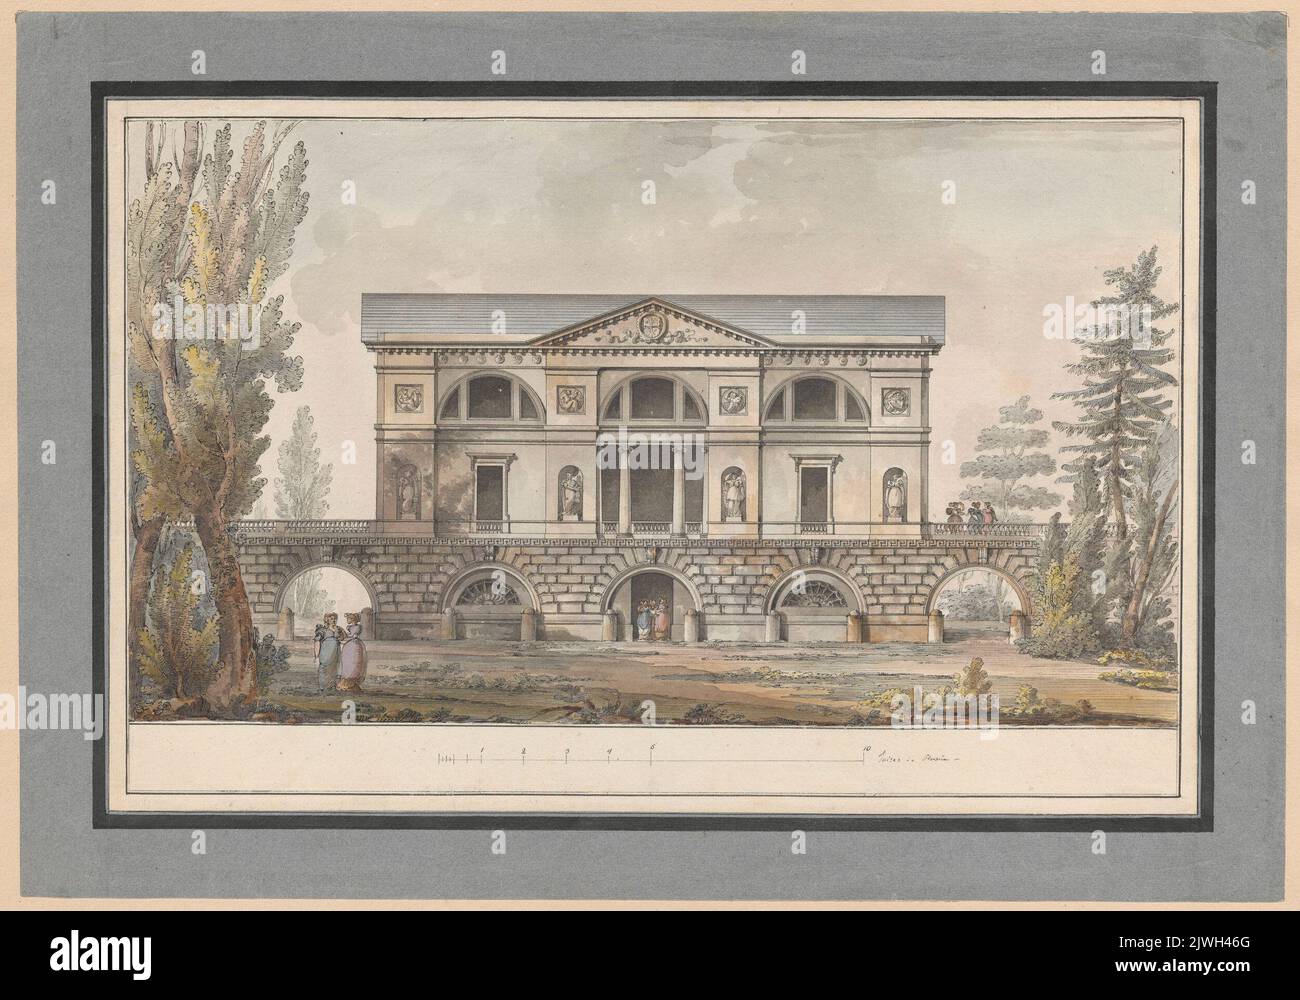 Carskie Sioło. Pawilon koncertowy. Elewacja frontowa. Quarenghi, Giacomo (1744-1817), draughtsman, cartoonist Stock Photo